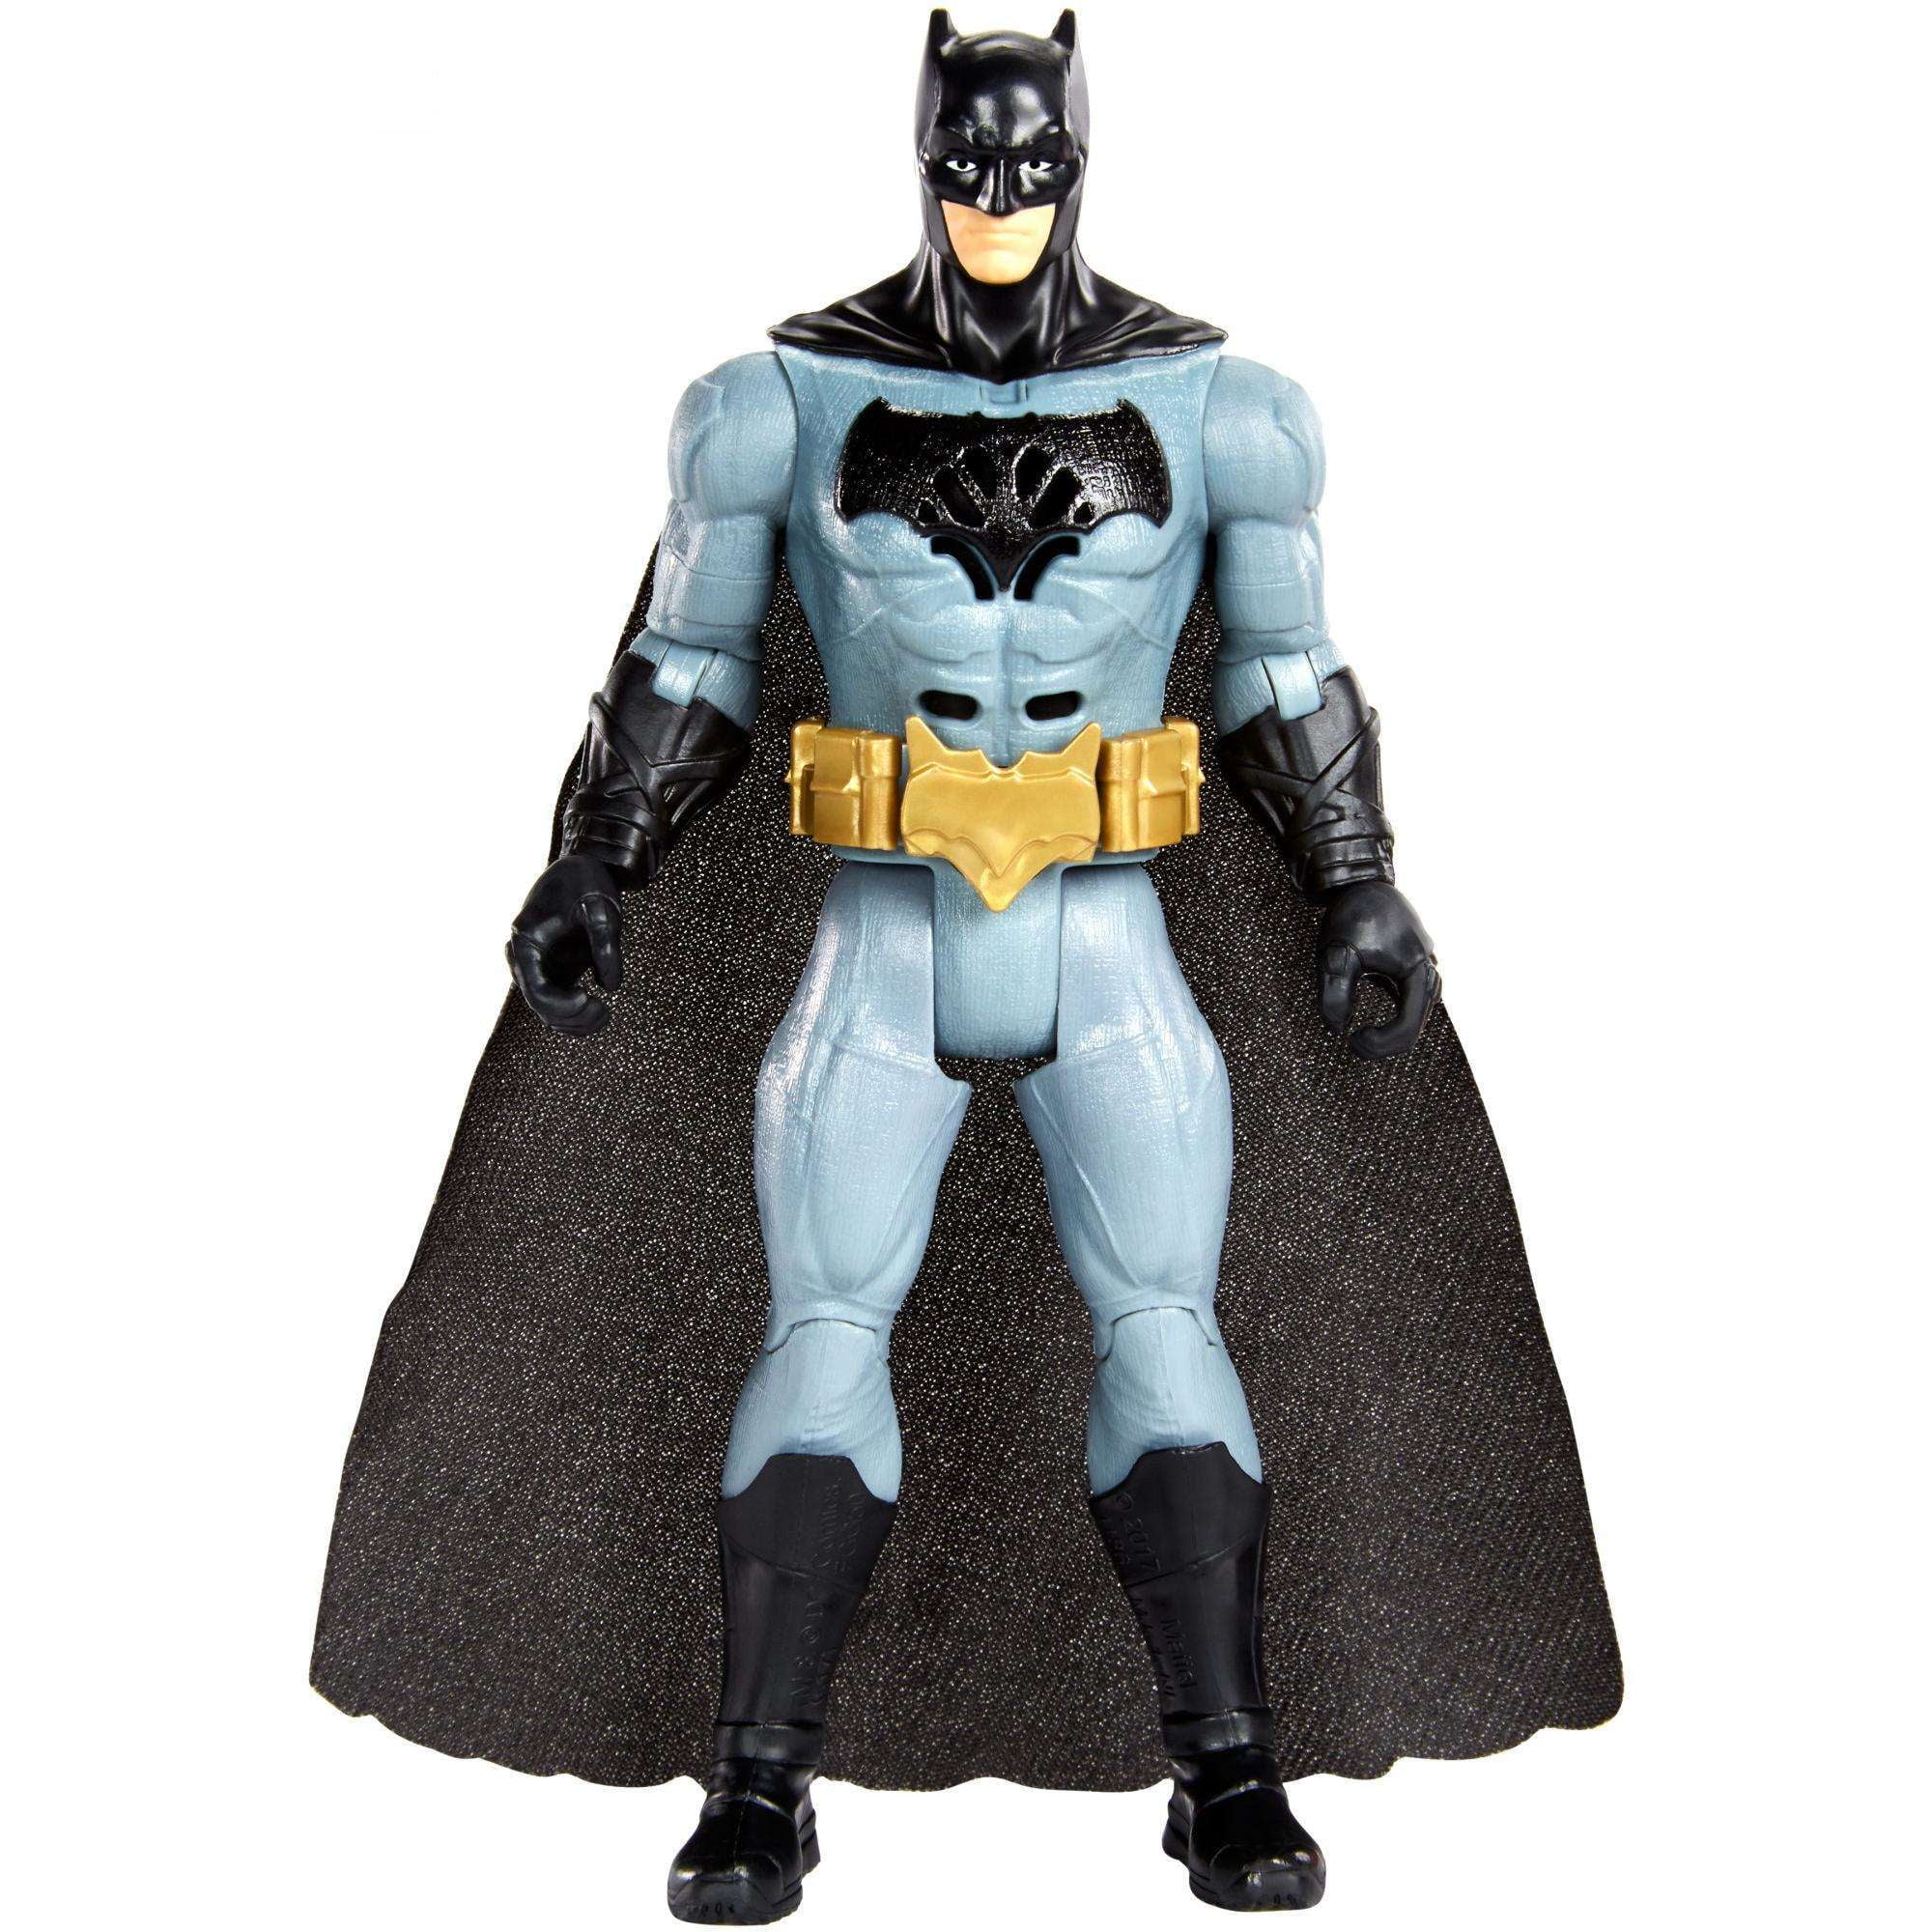 batman figure justice league